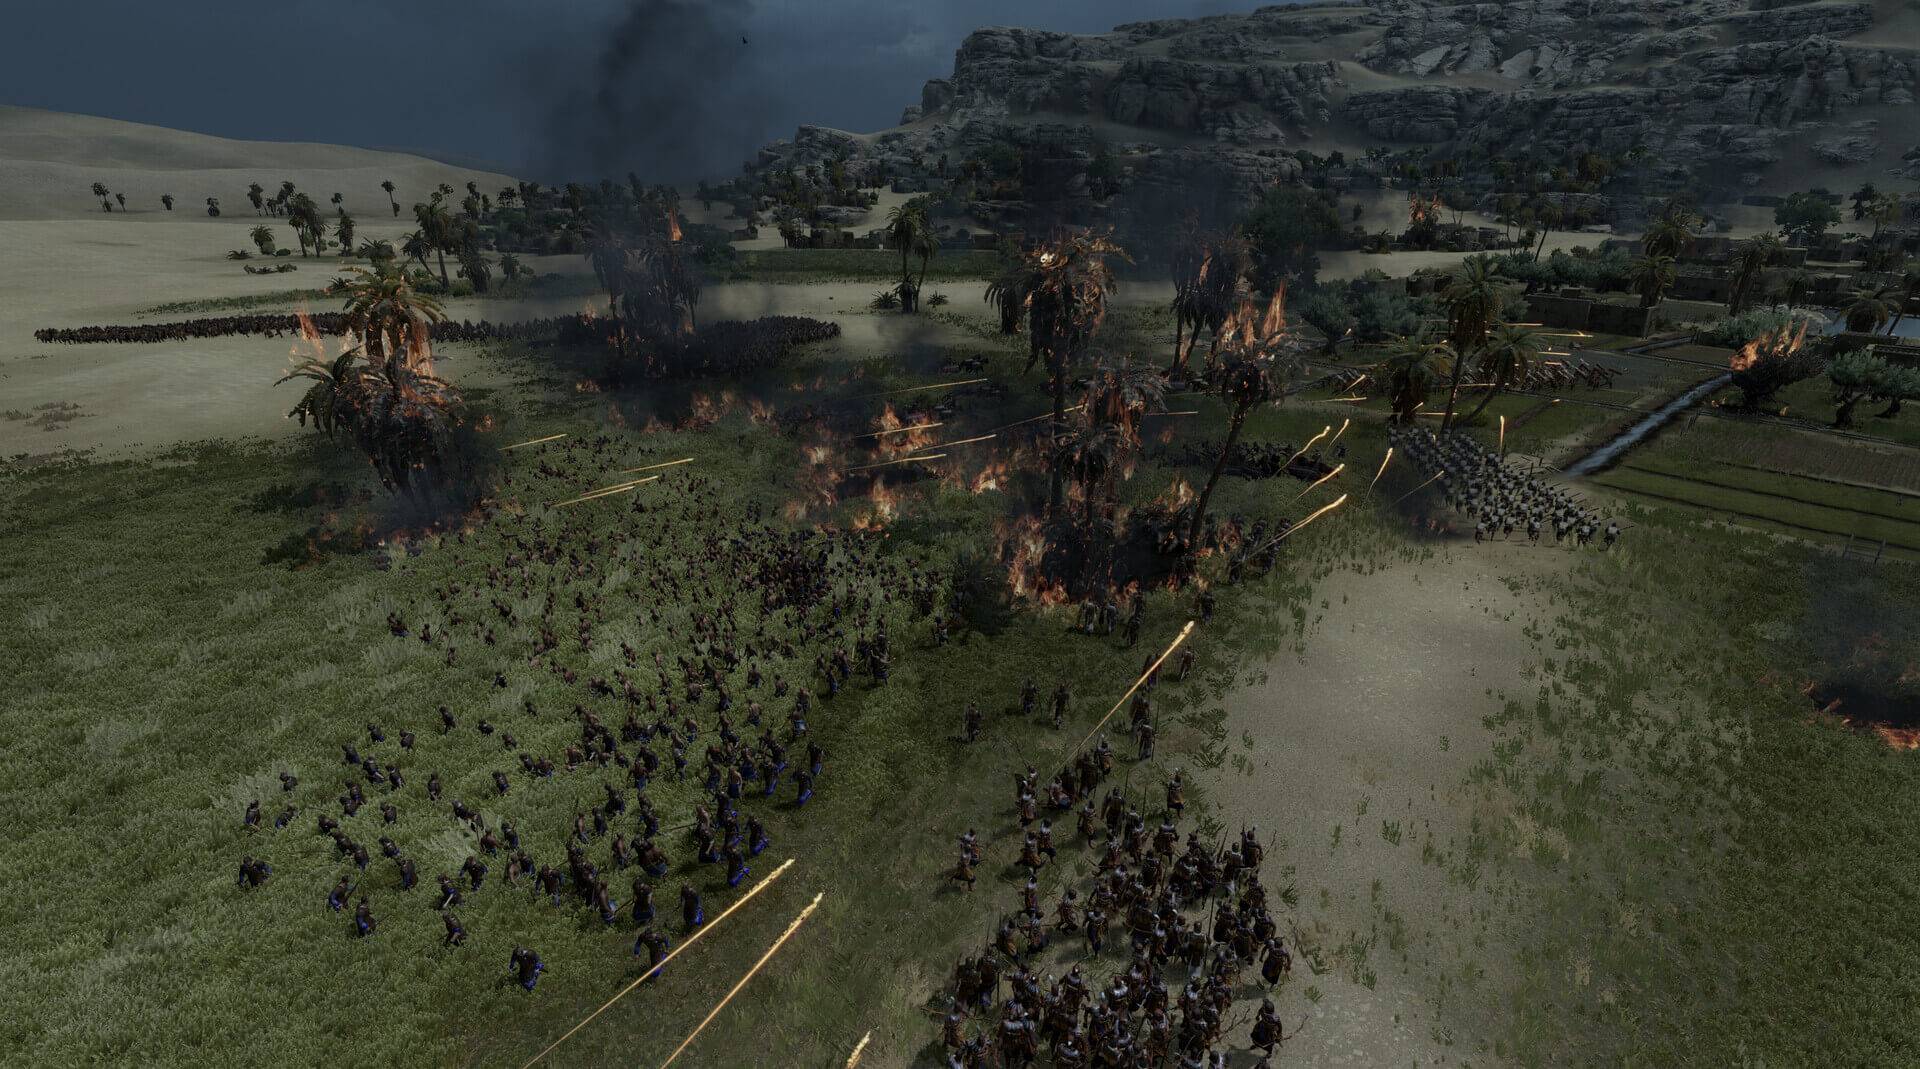 Download Total War: PHARAOH